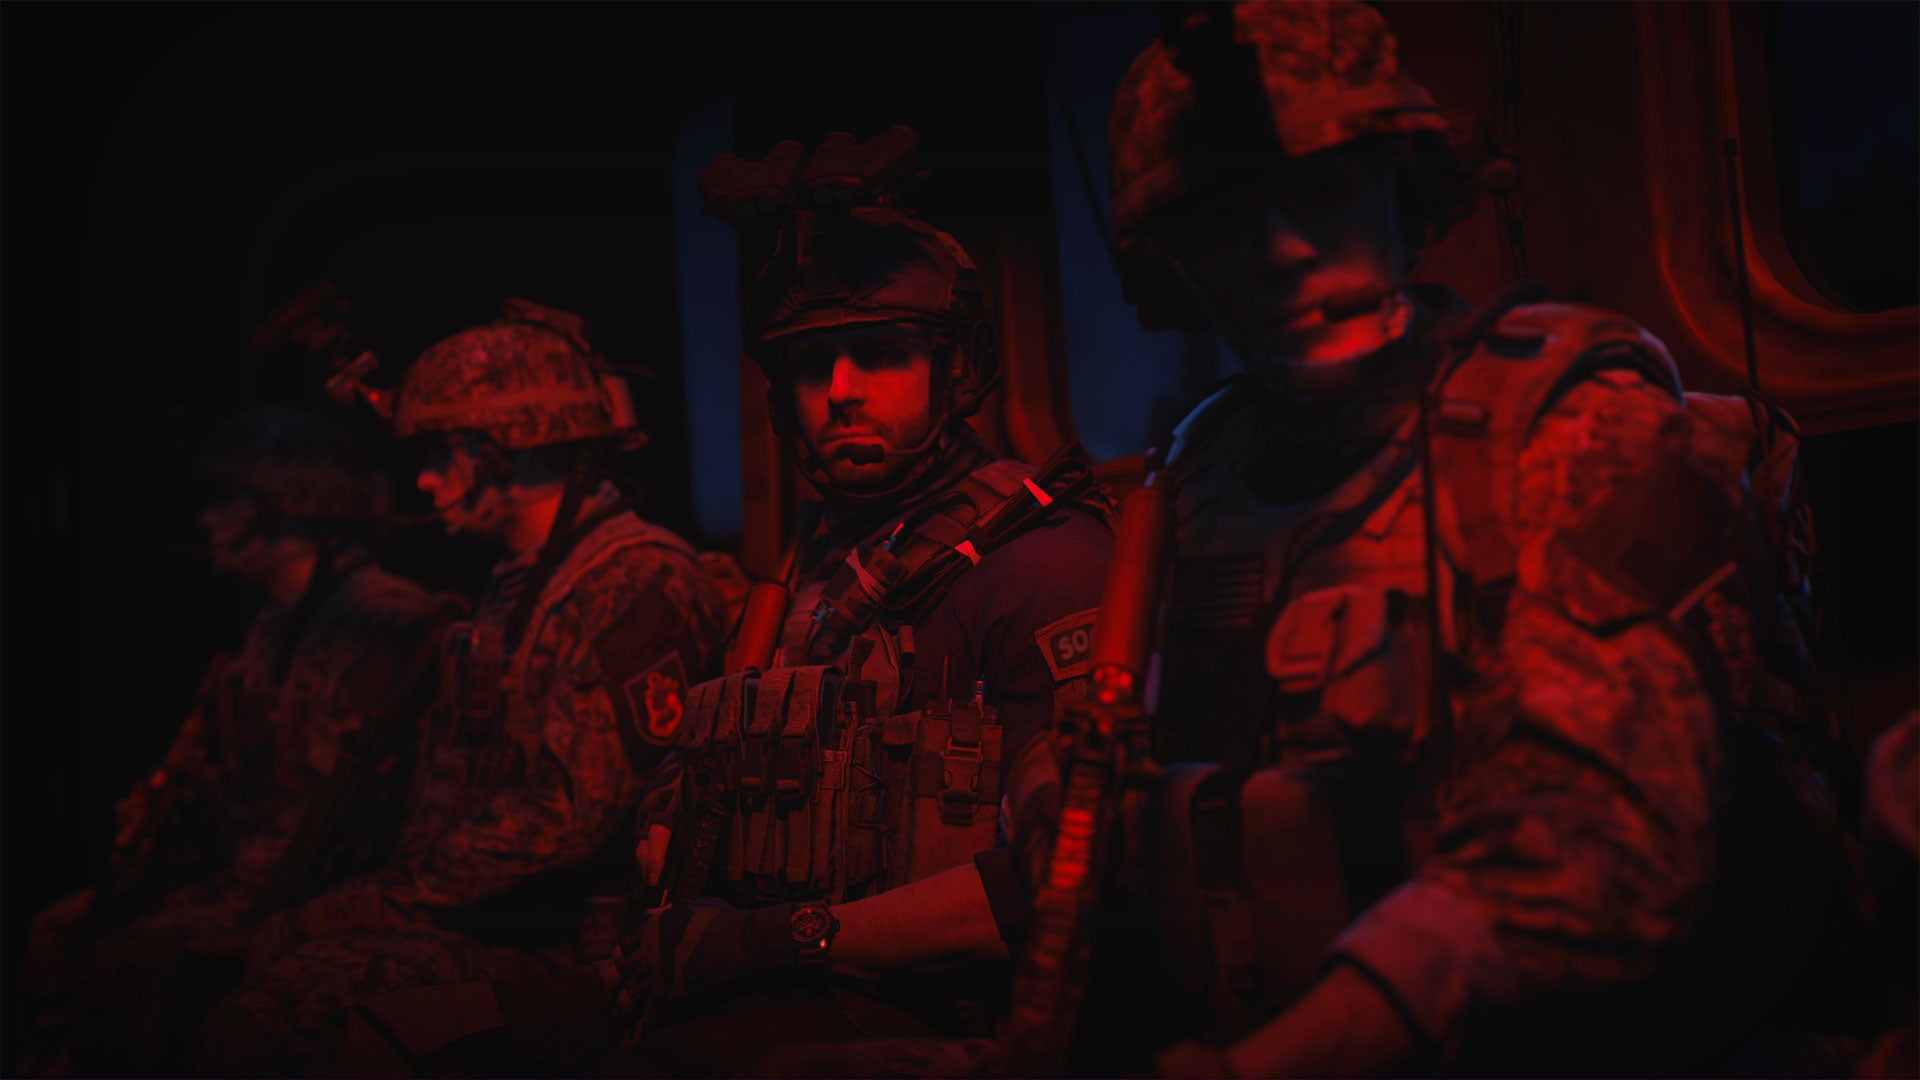 Afbeeldingen van Warzone 2 - AQ Soldiers uitgelegd, en waar je ze kan vinden